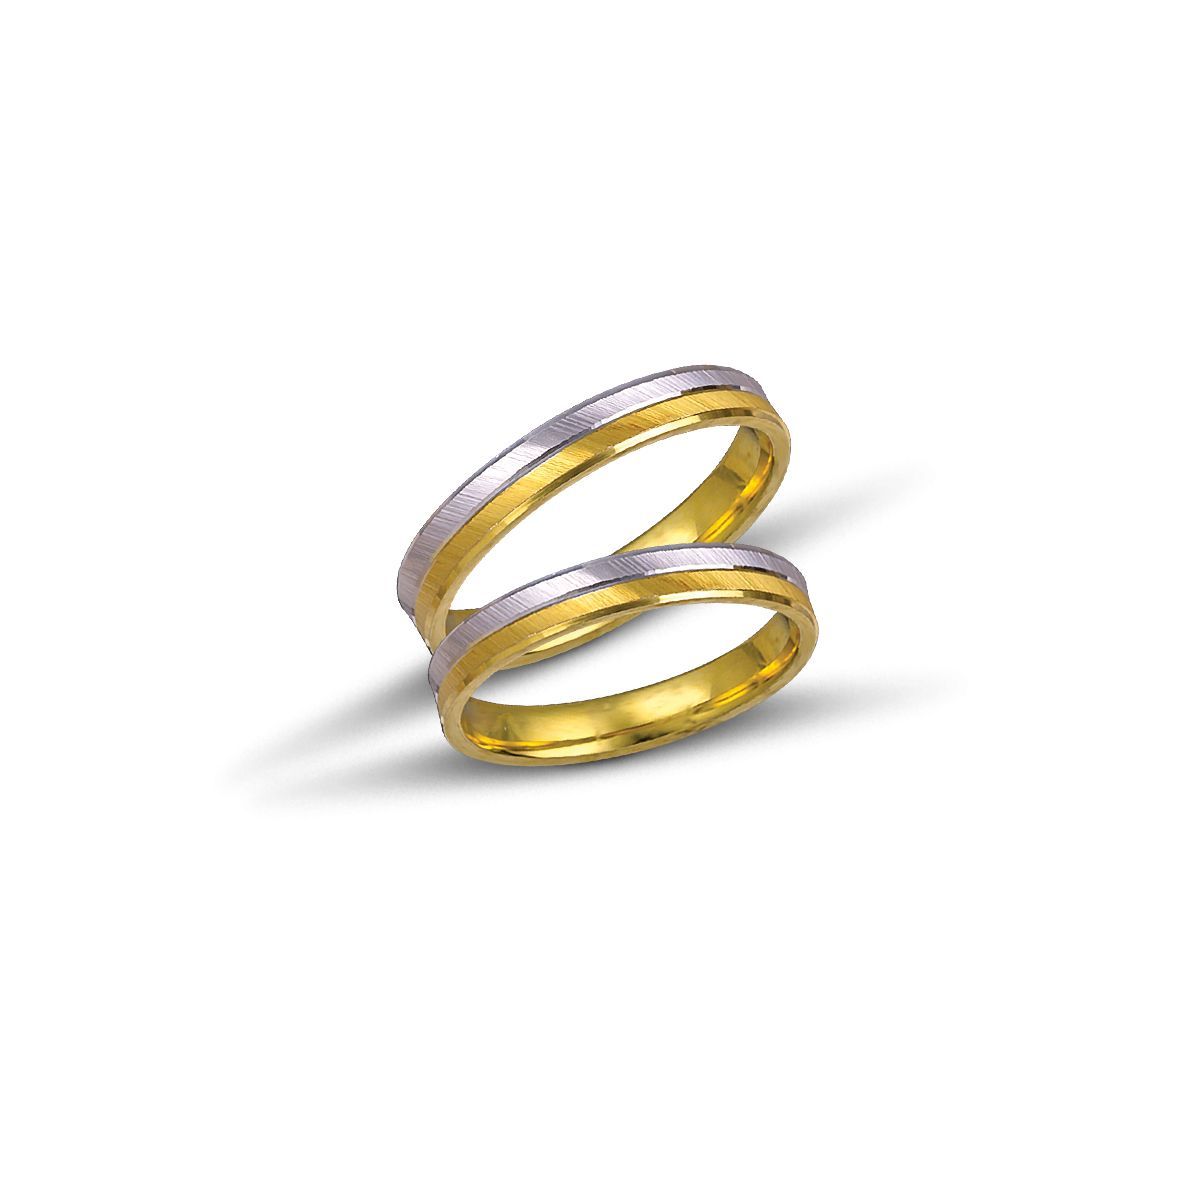 White gold & gold wedding rings 3.4mm (code VK1044/34)